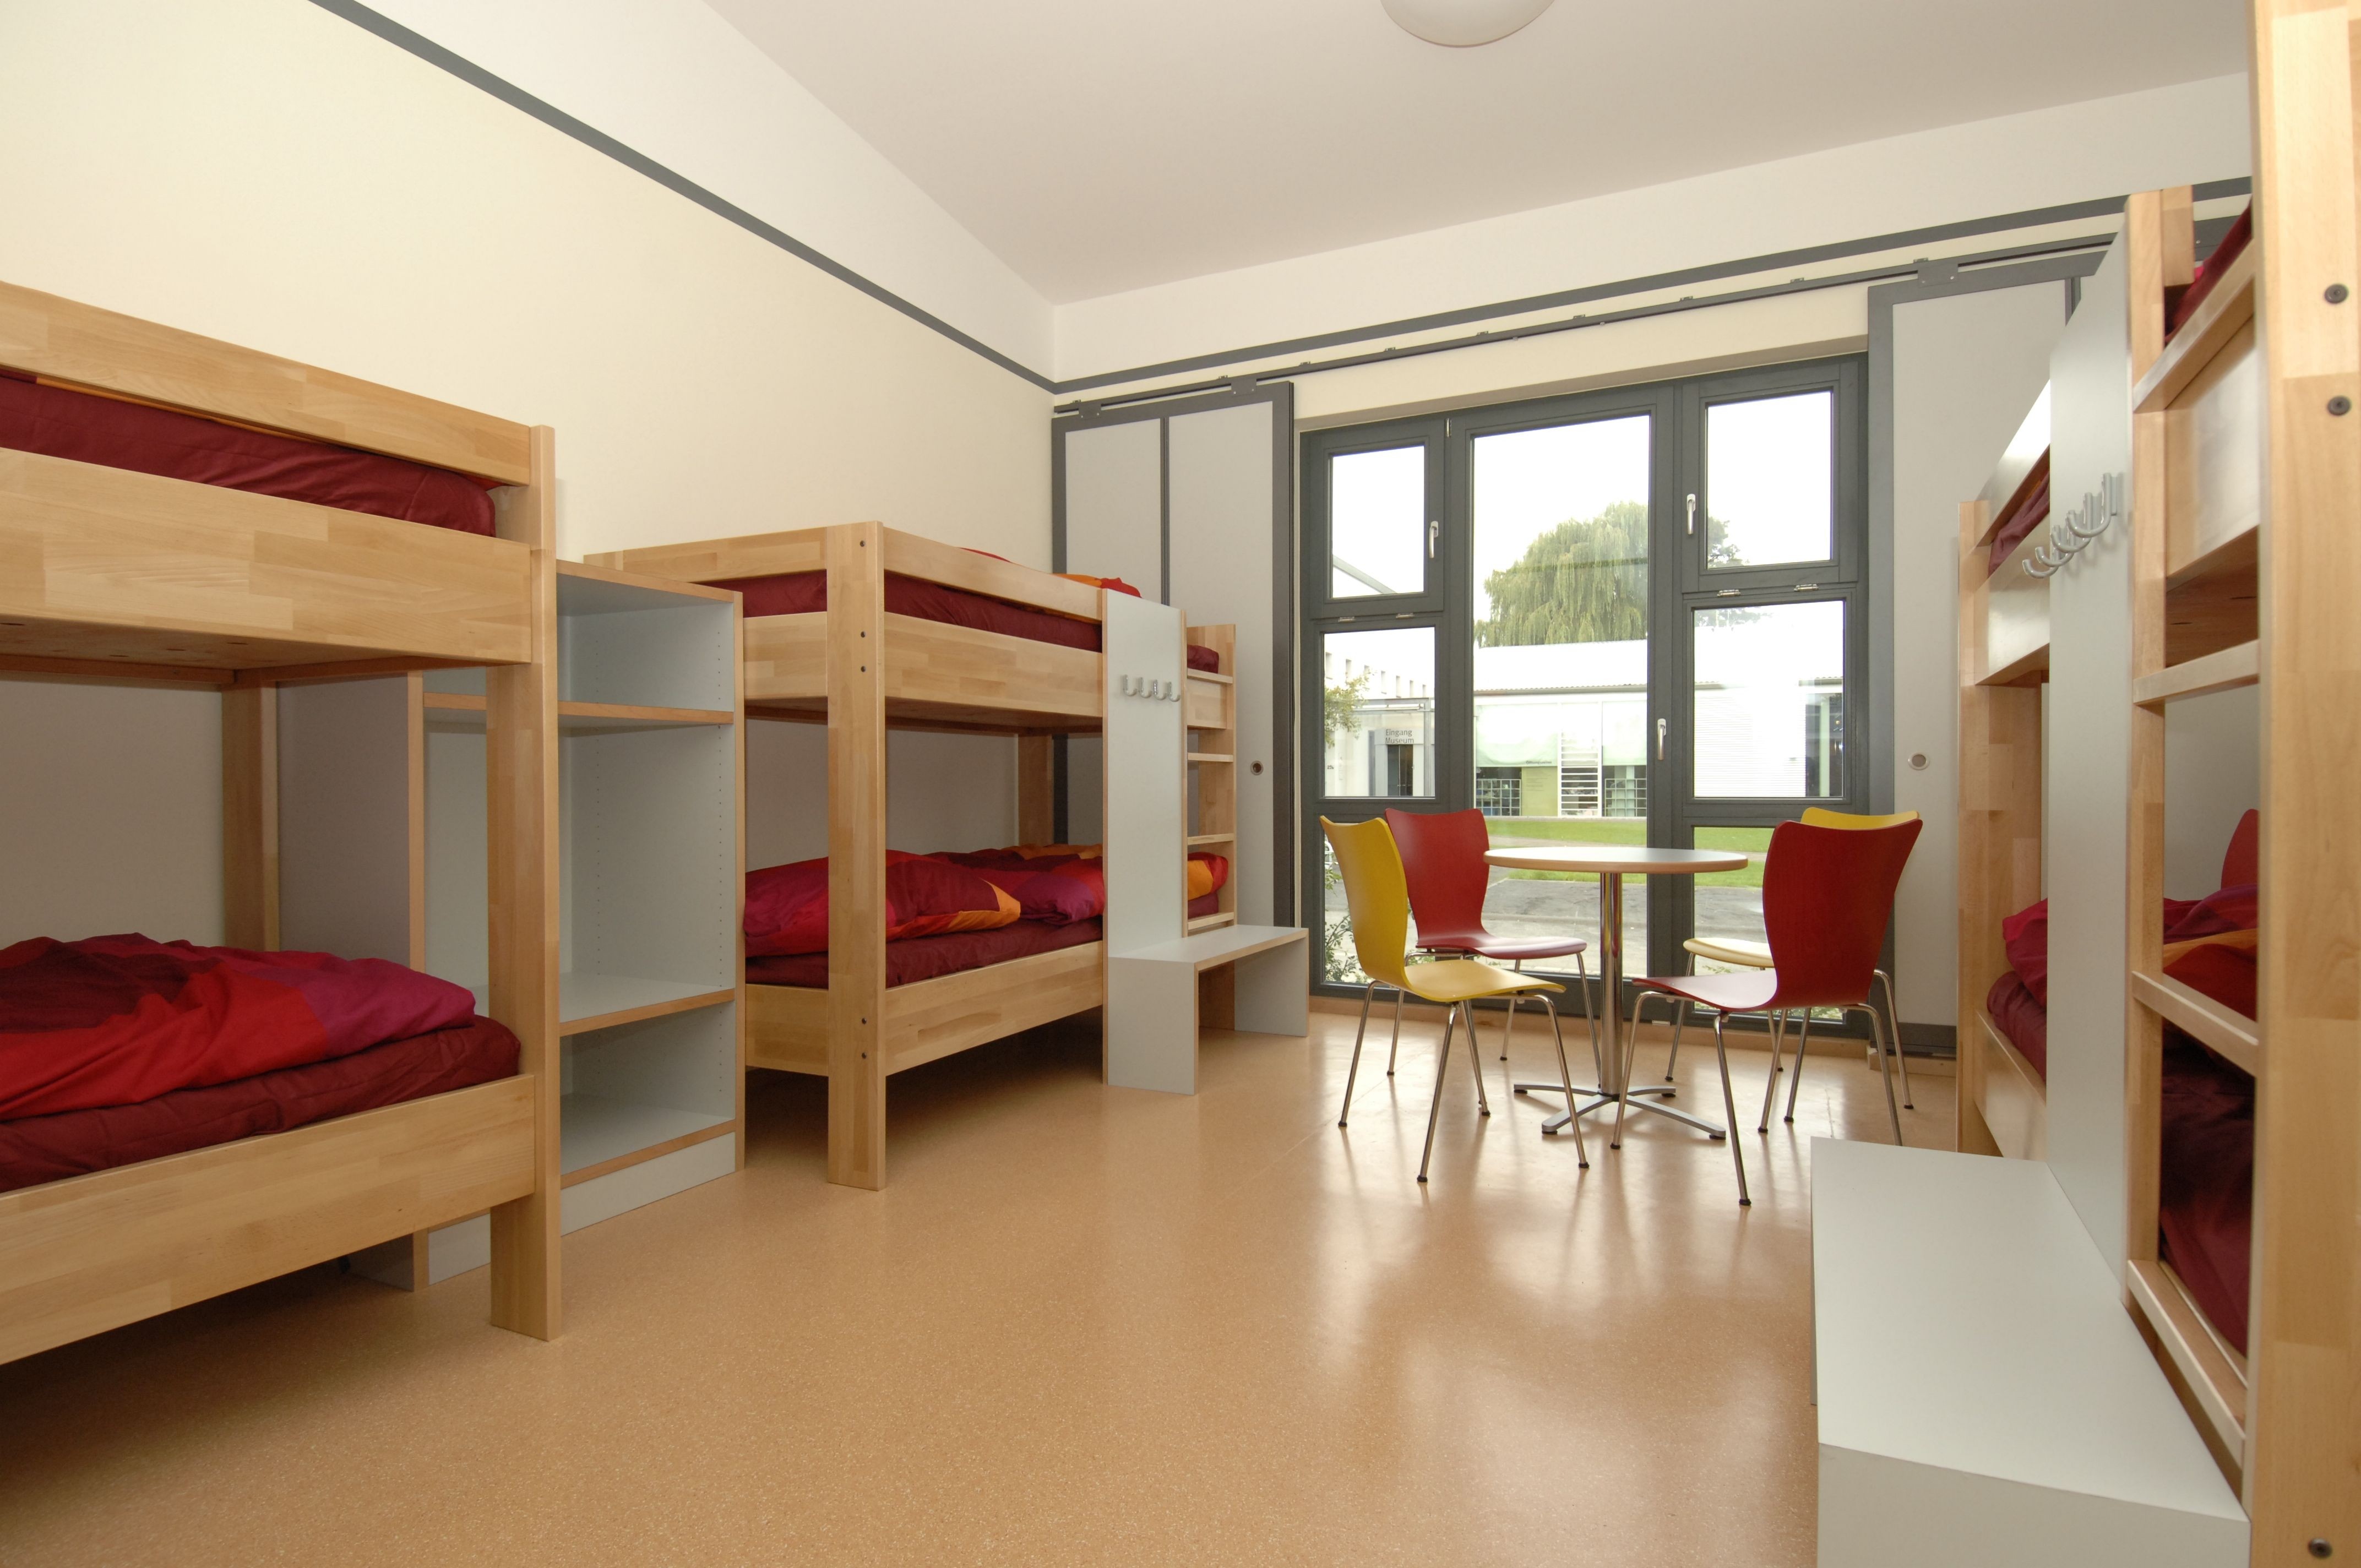 Die Schlafräume, hier ein Sechsbettzimmer, sind funktional und harmonisch eingerichtet.